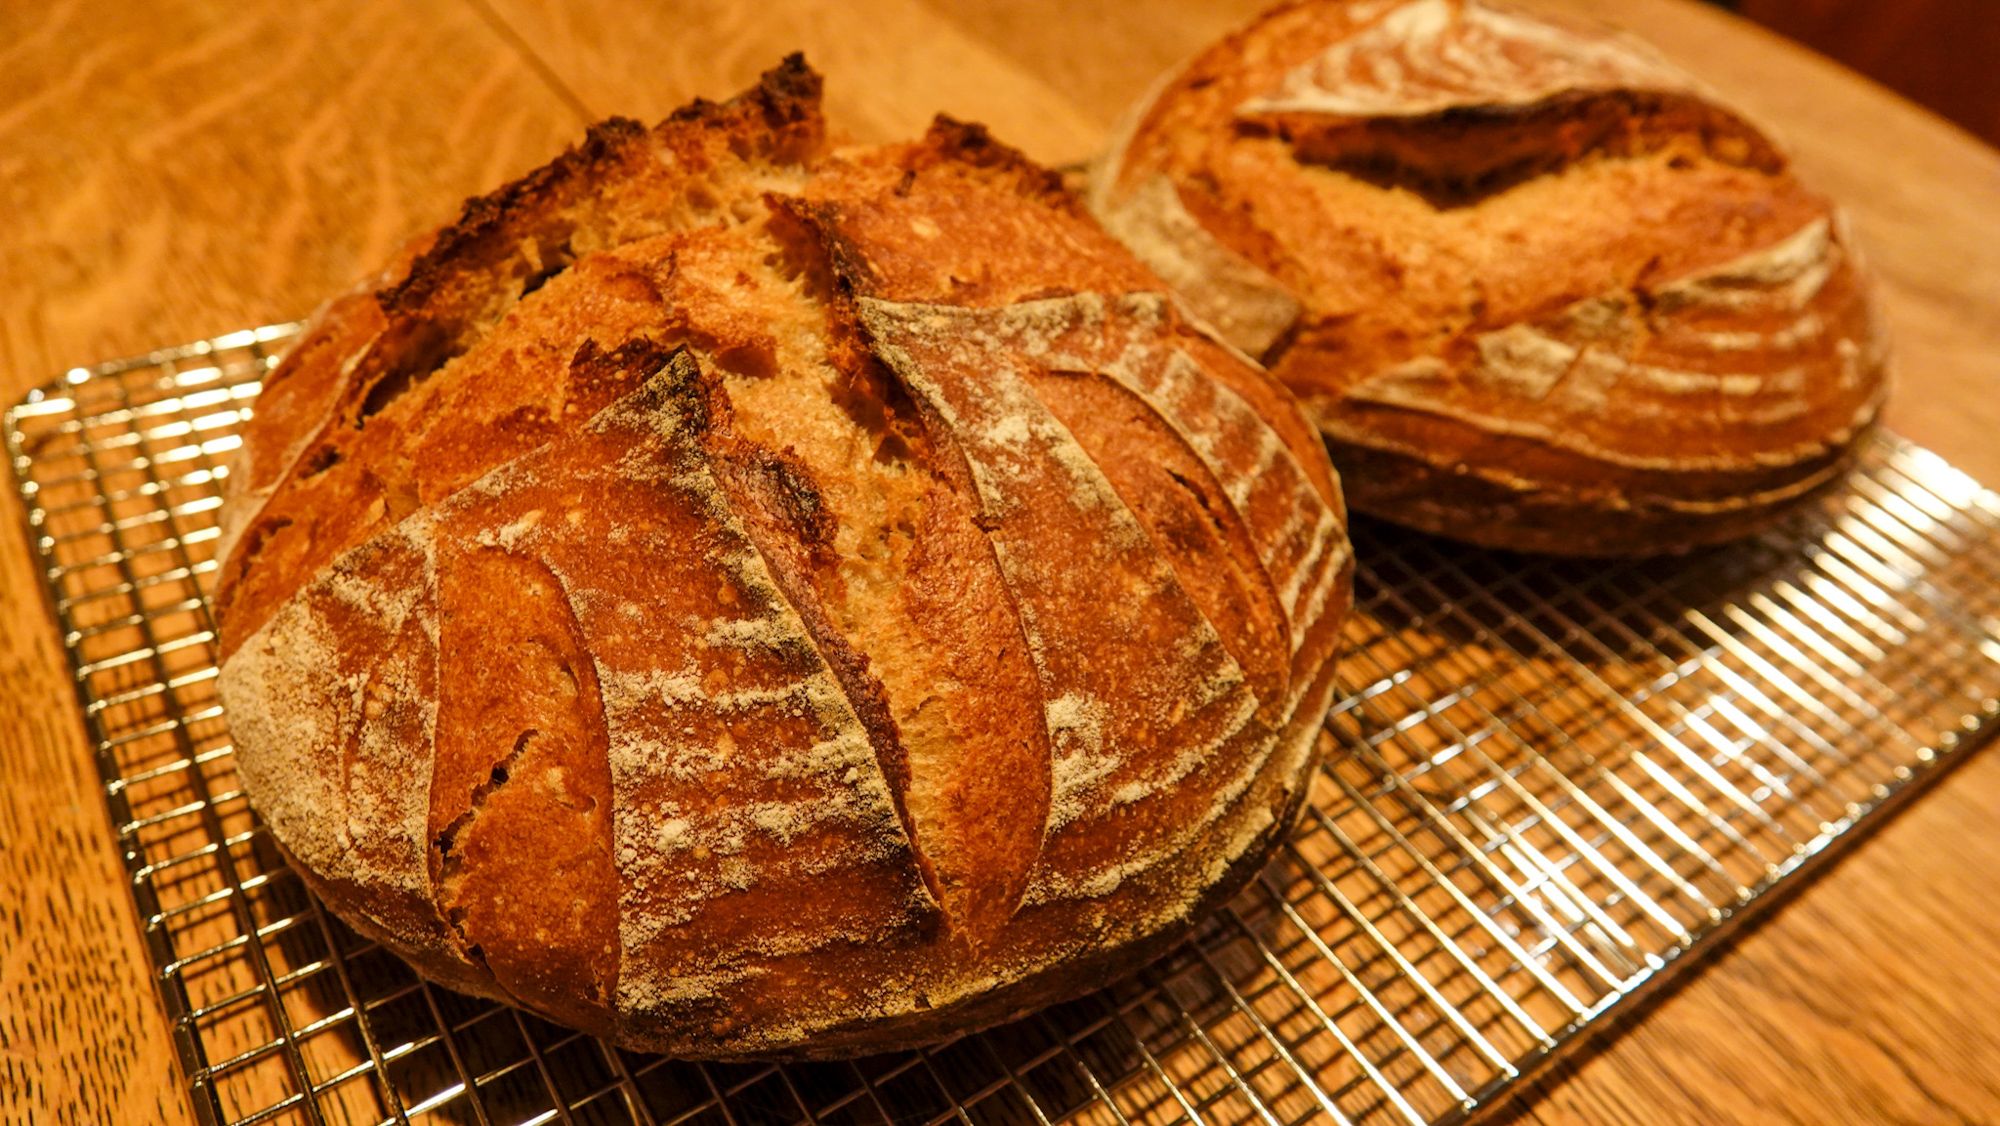 Recipe: Rye and Whole Wheat Sourdough Bread